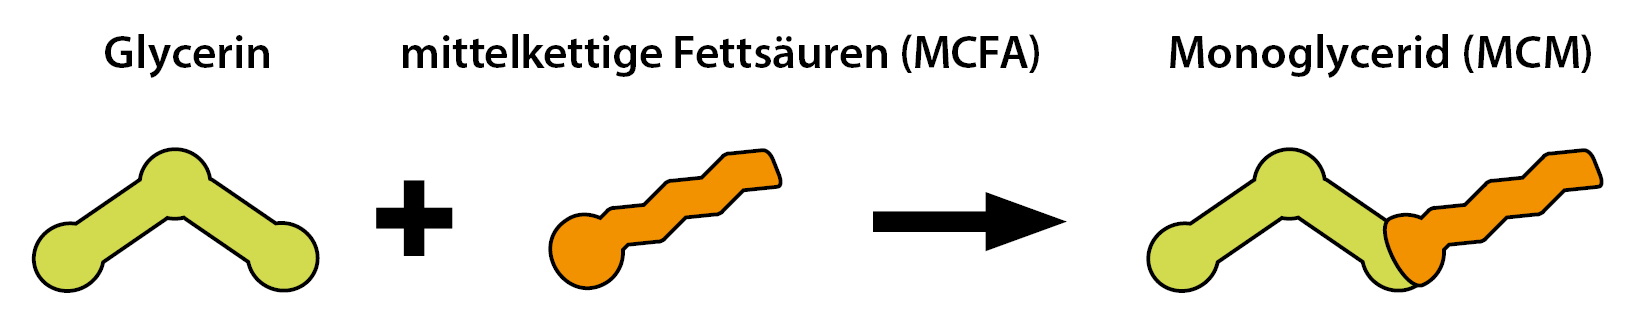 molécules d'acides gras à chaîne moyenne (MCFA) et leurs monoglycérides (MCM)